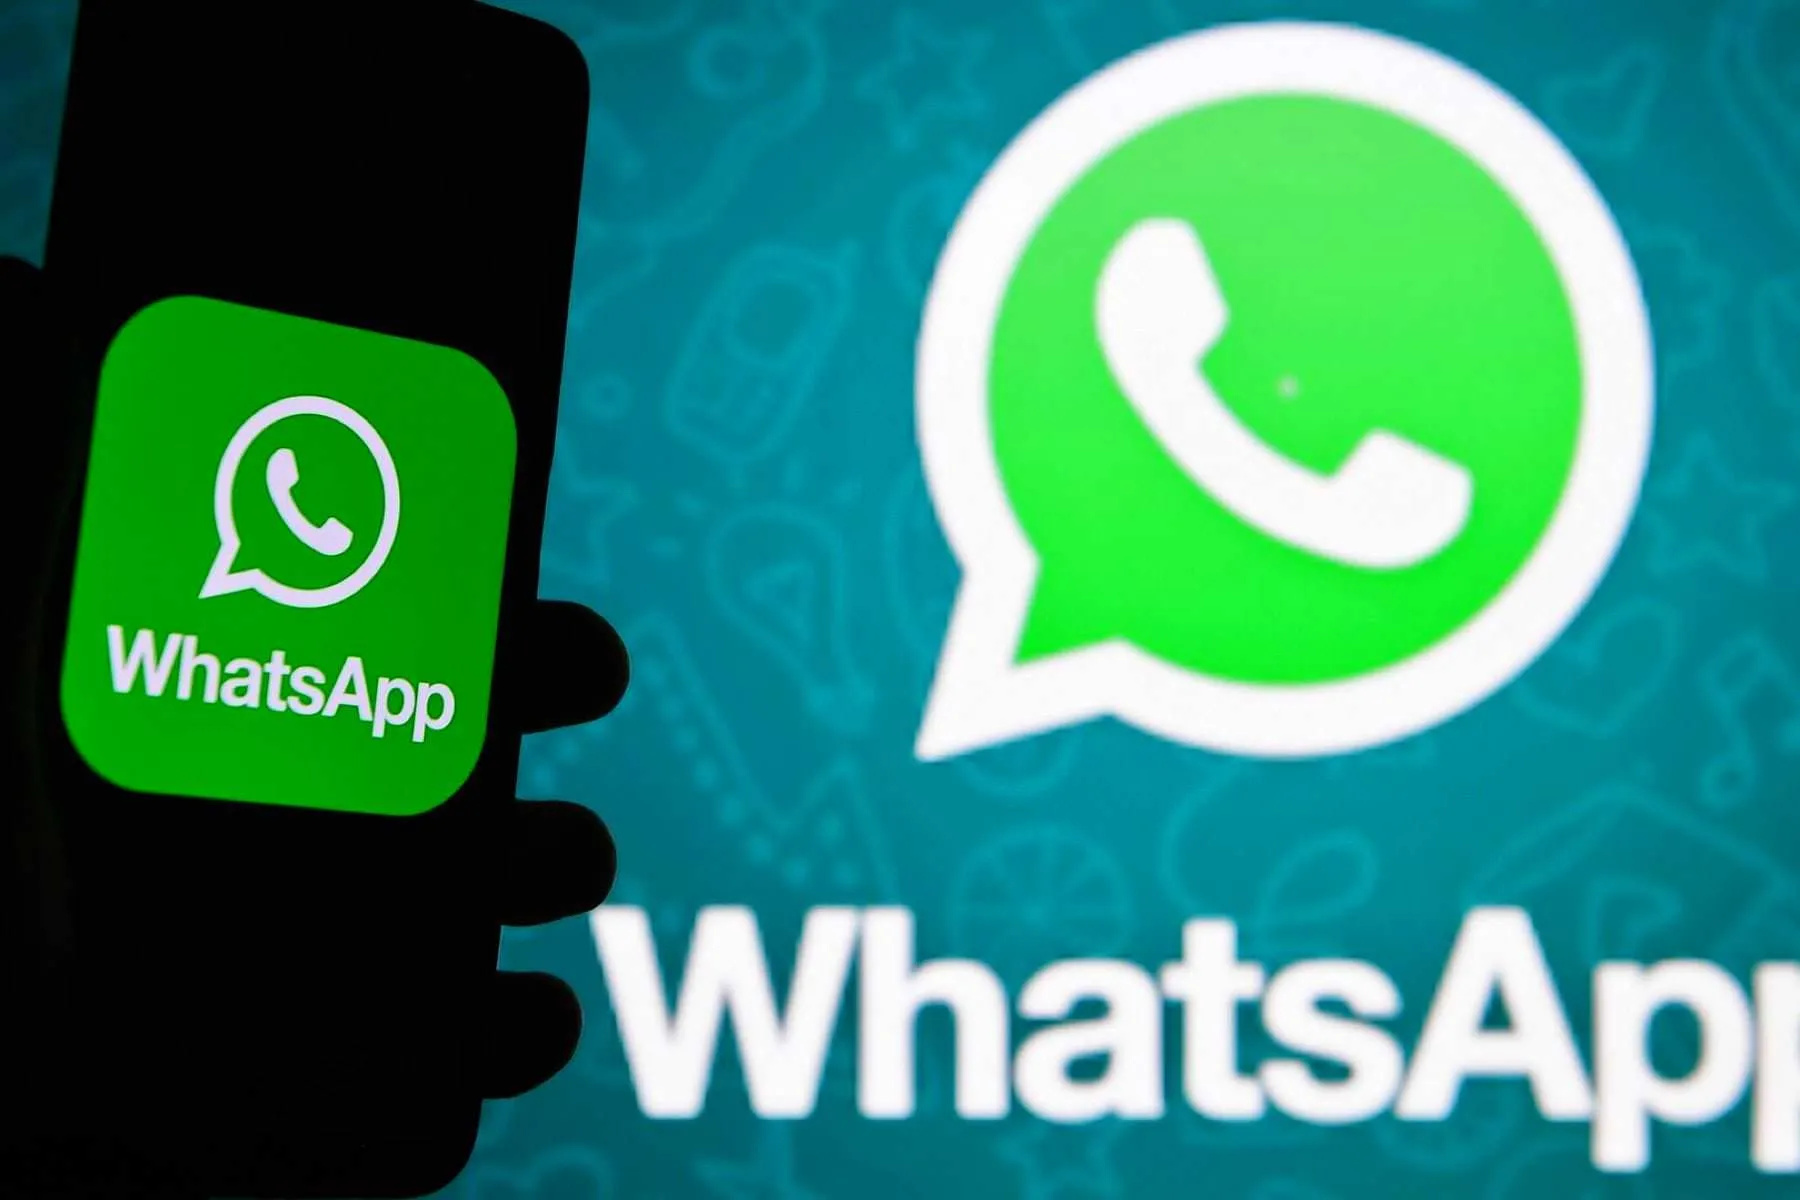 WhatsApp позволяет прямо сейчас прослушать голосовое сообщение перед его отправкой